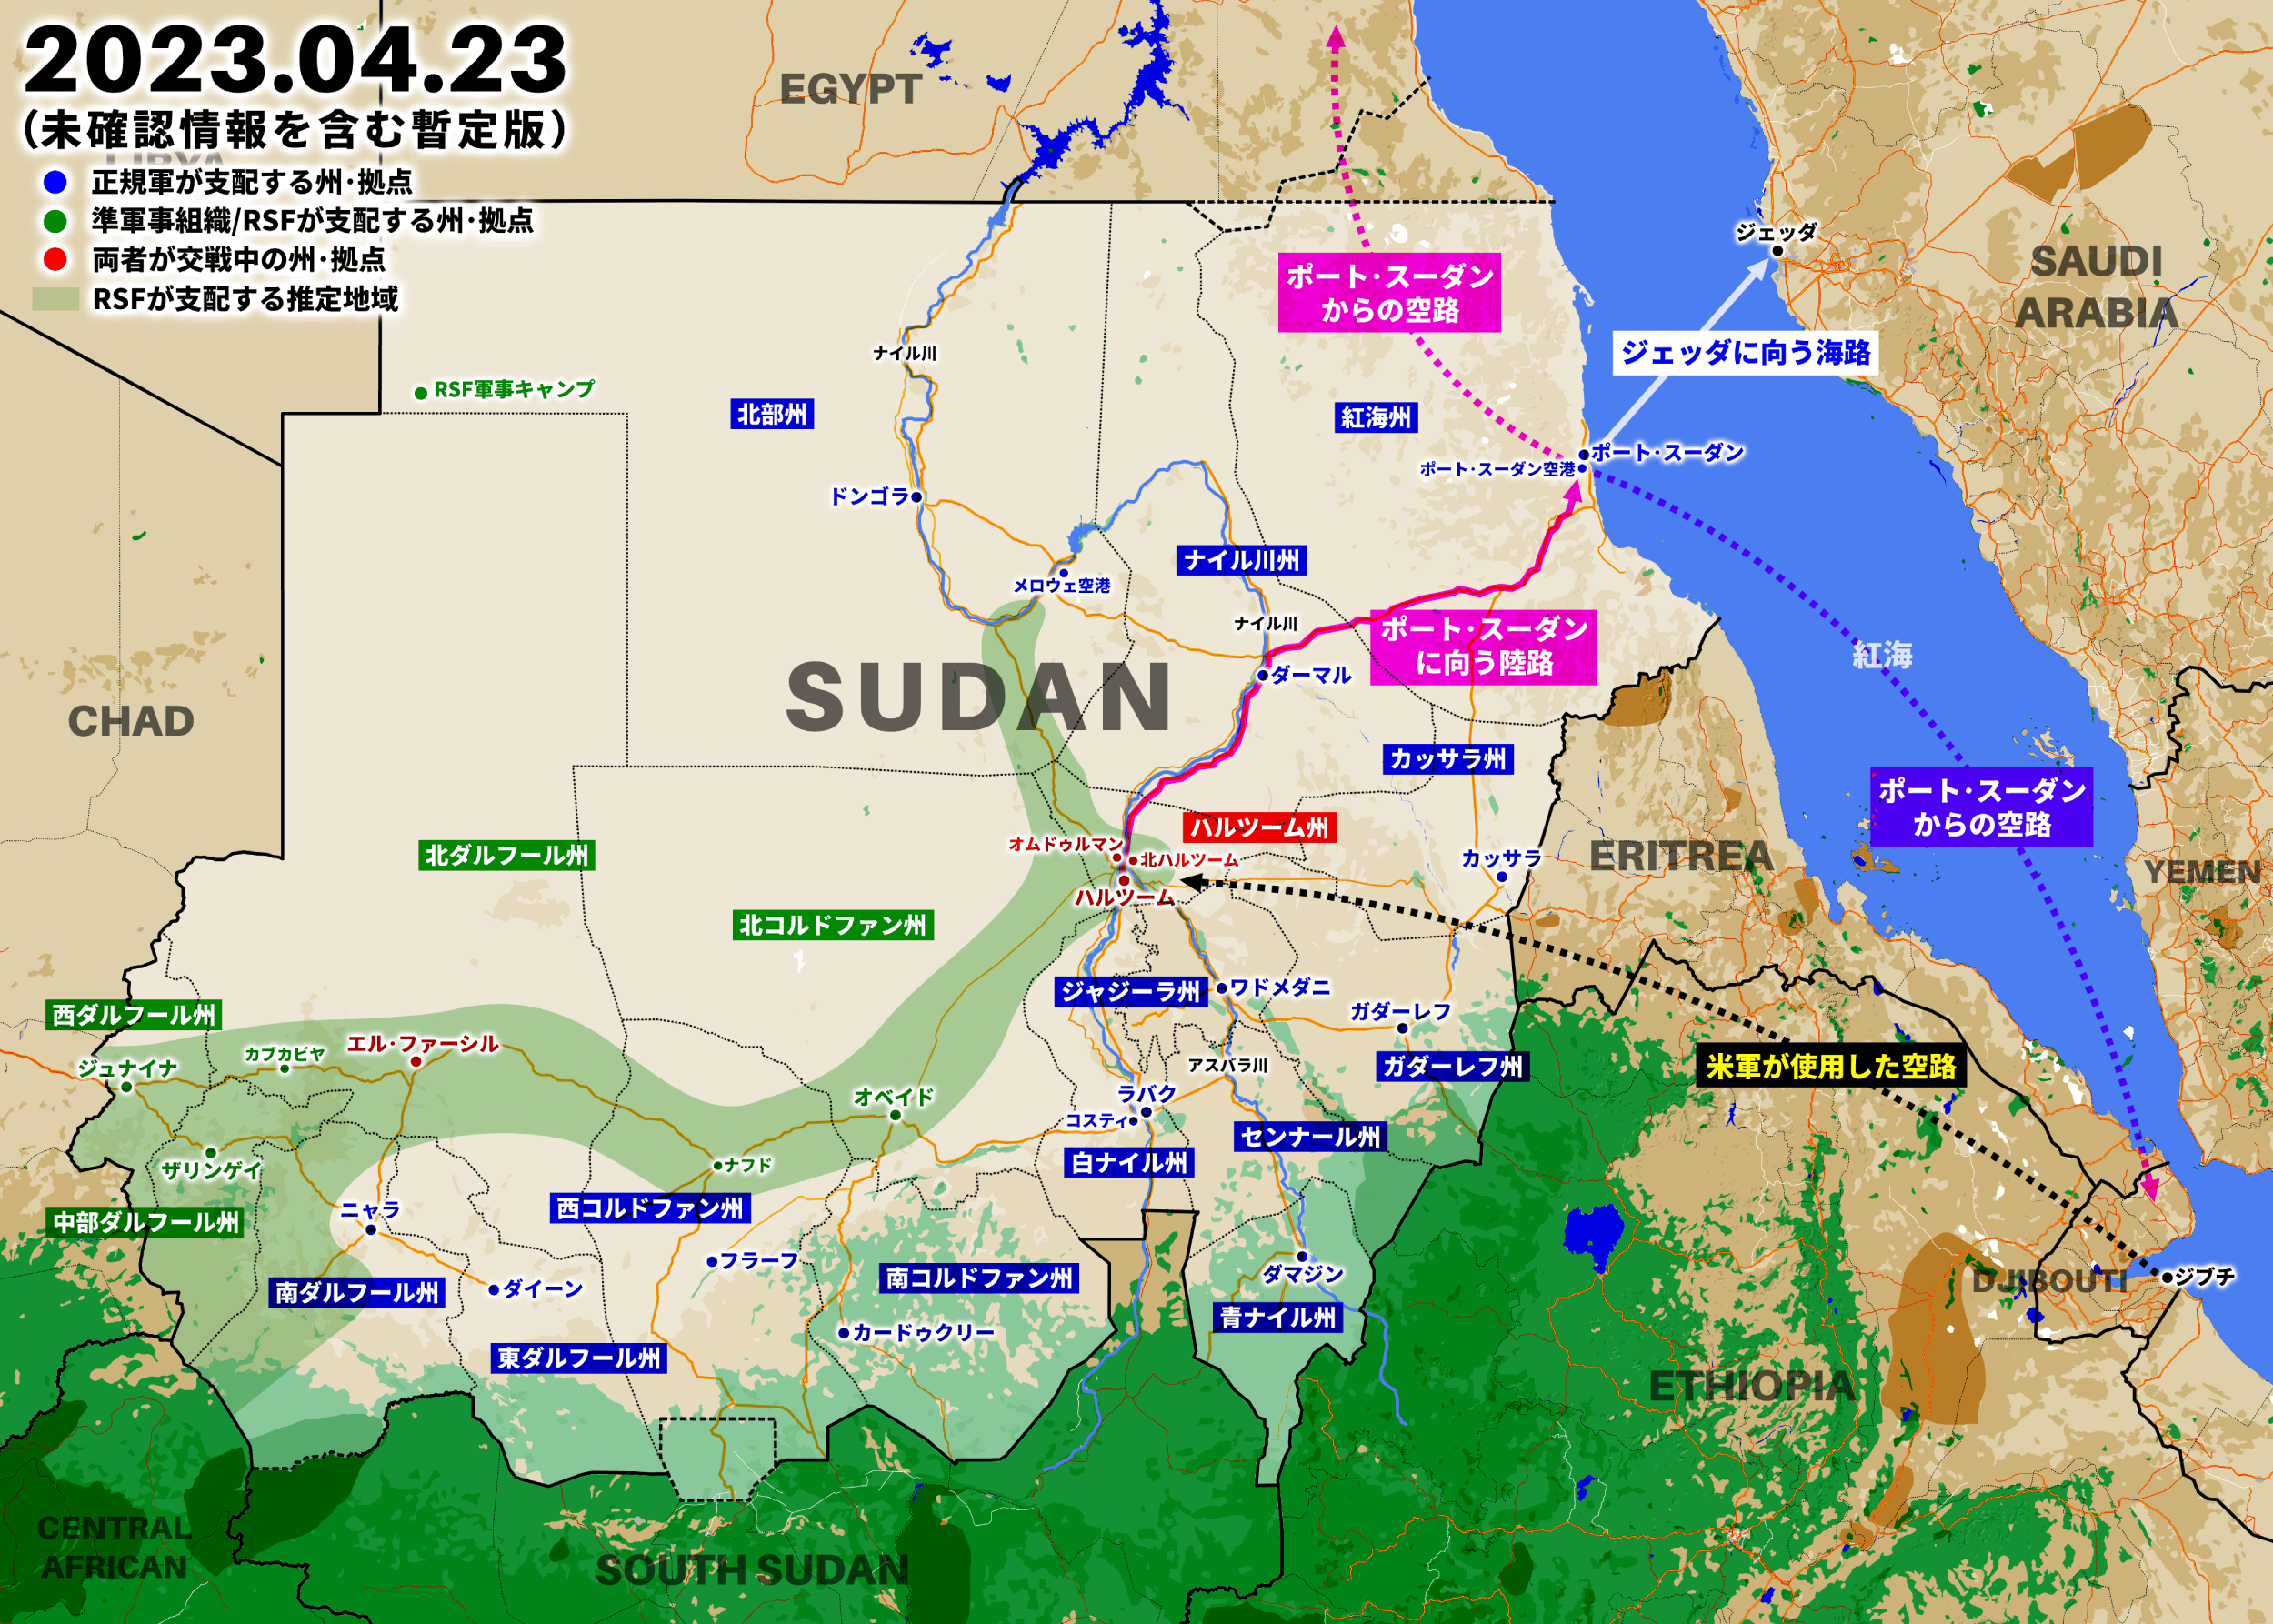 スーダンからの在留邦人退避、陸路でポート･スーダンに向かい航空機で退避か